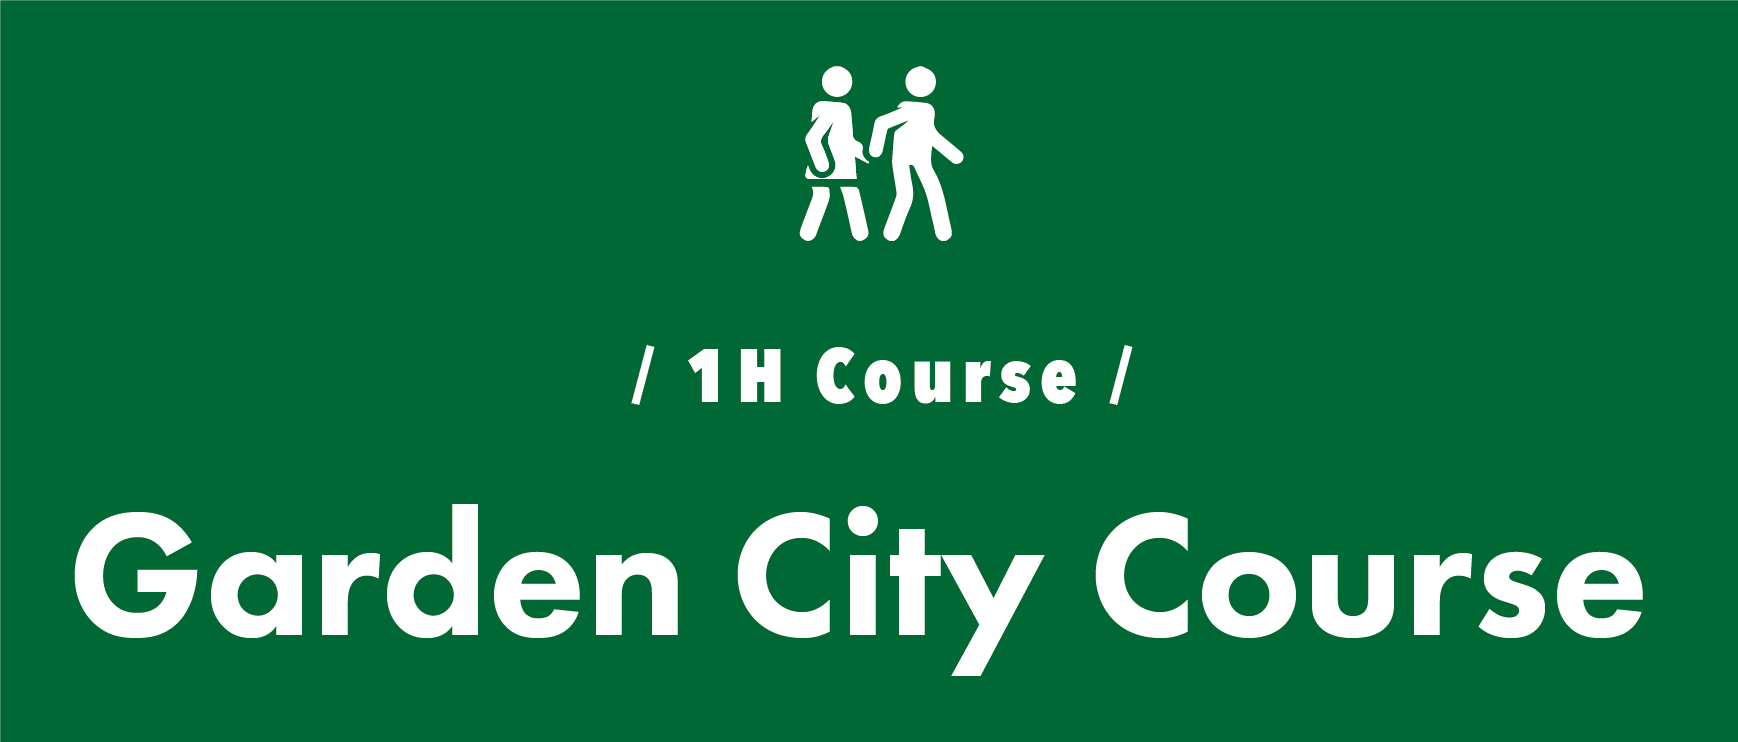 / 1H Course / Garden City Course